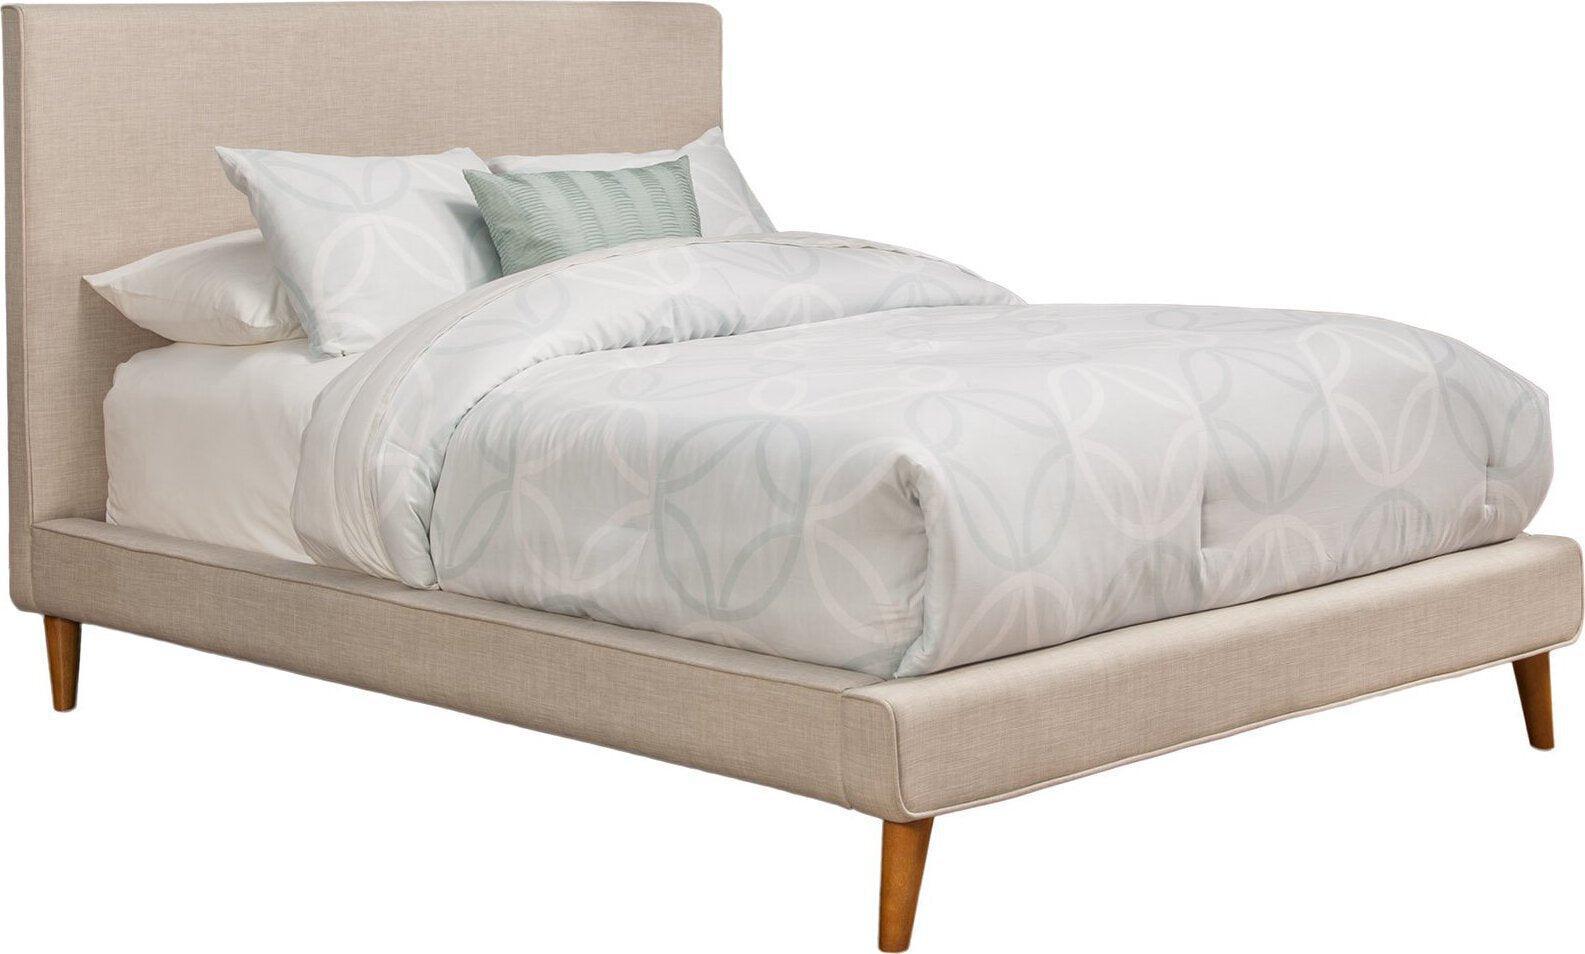 Alpine Furniture Beds - Britney Full Upholstered Platform Bed Light Gray Linen